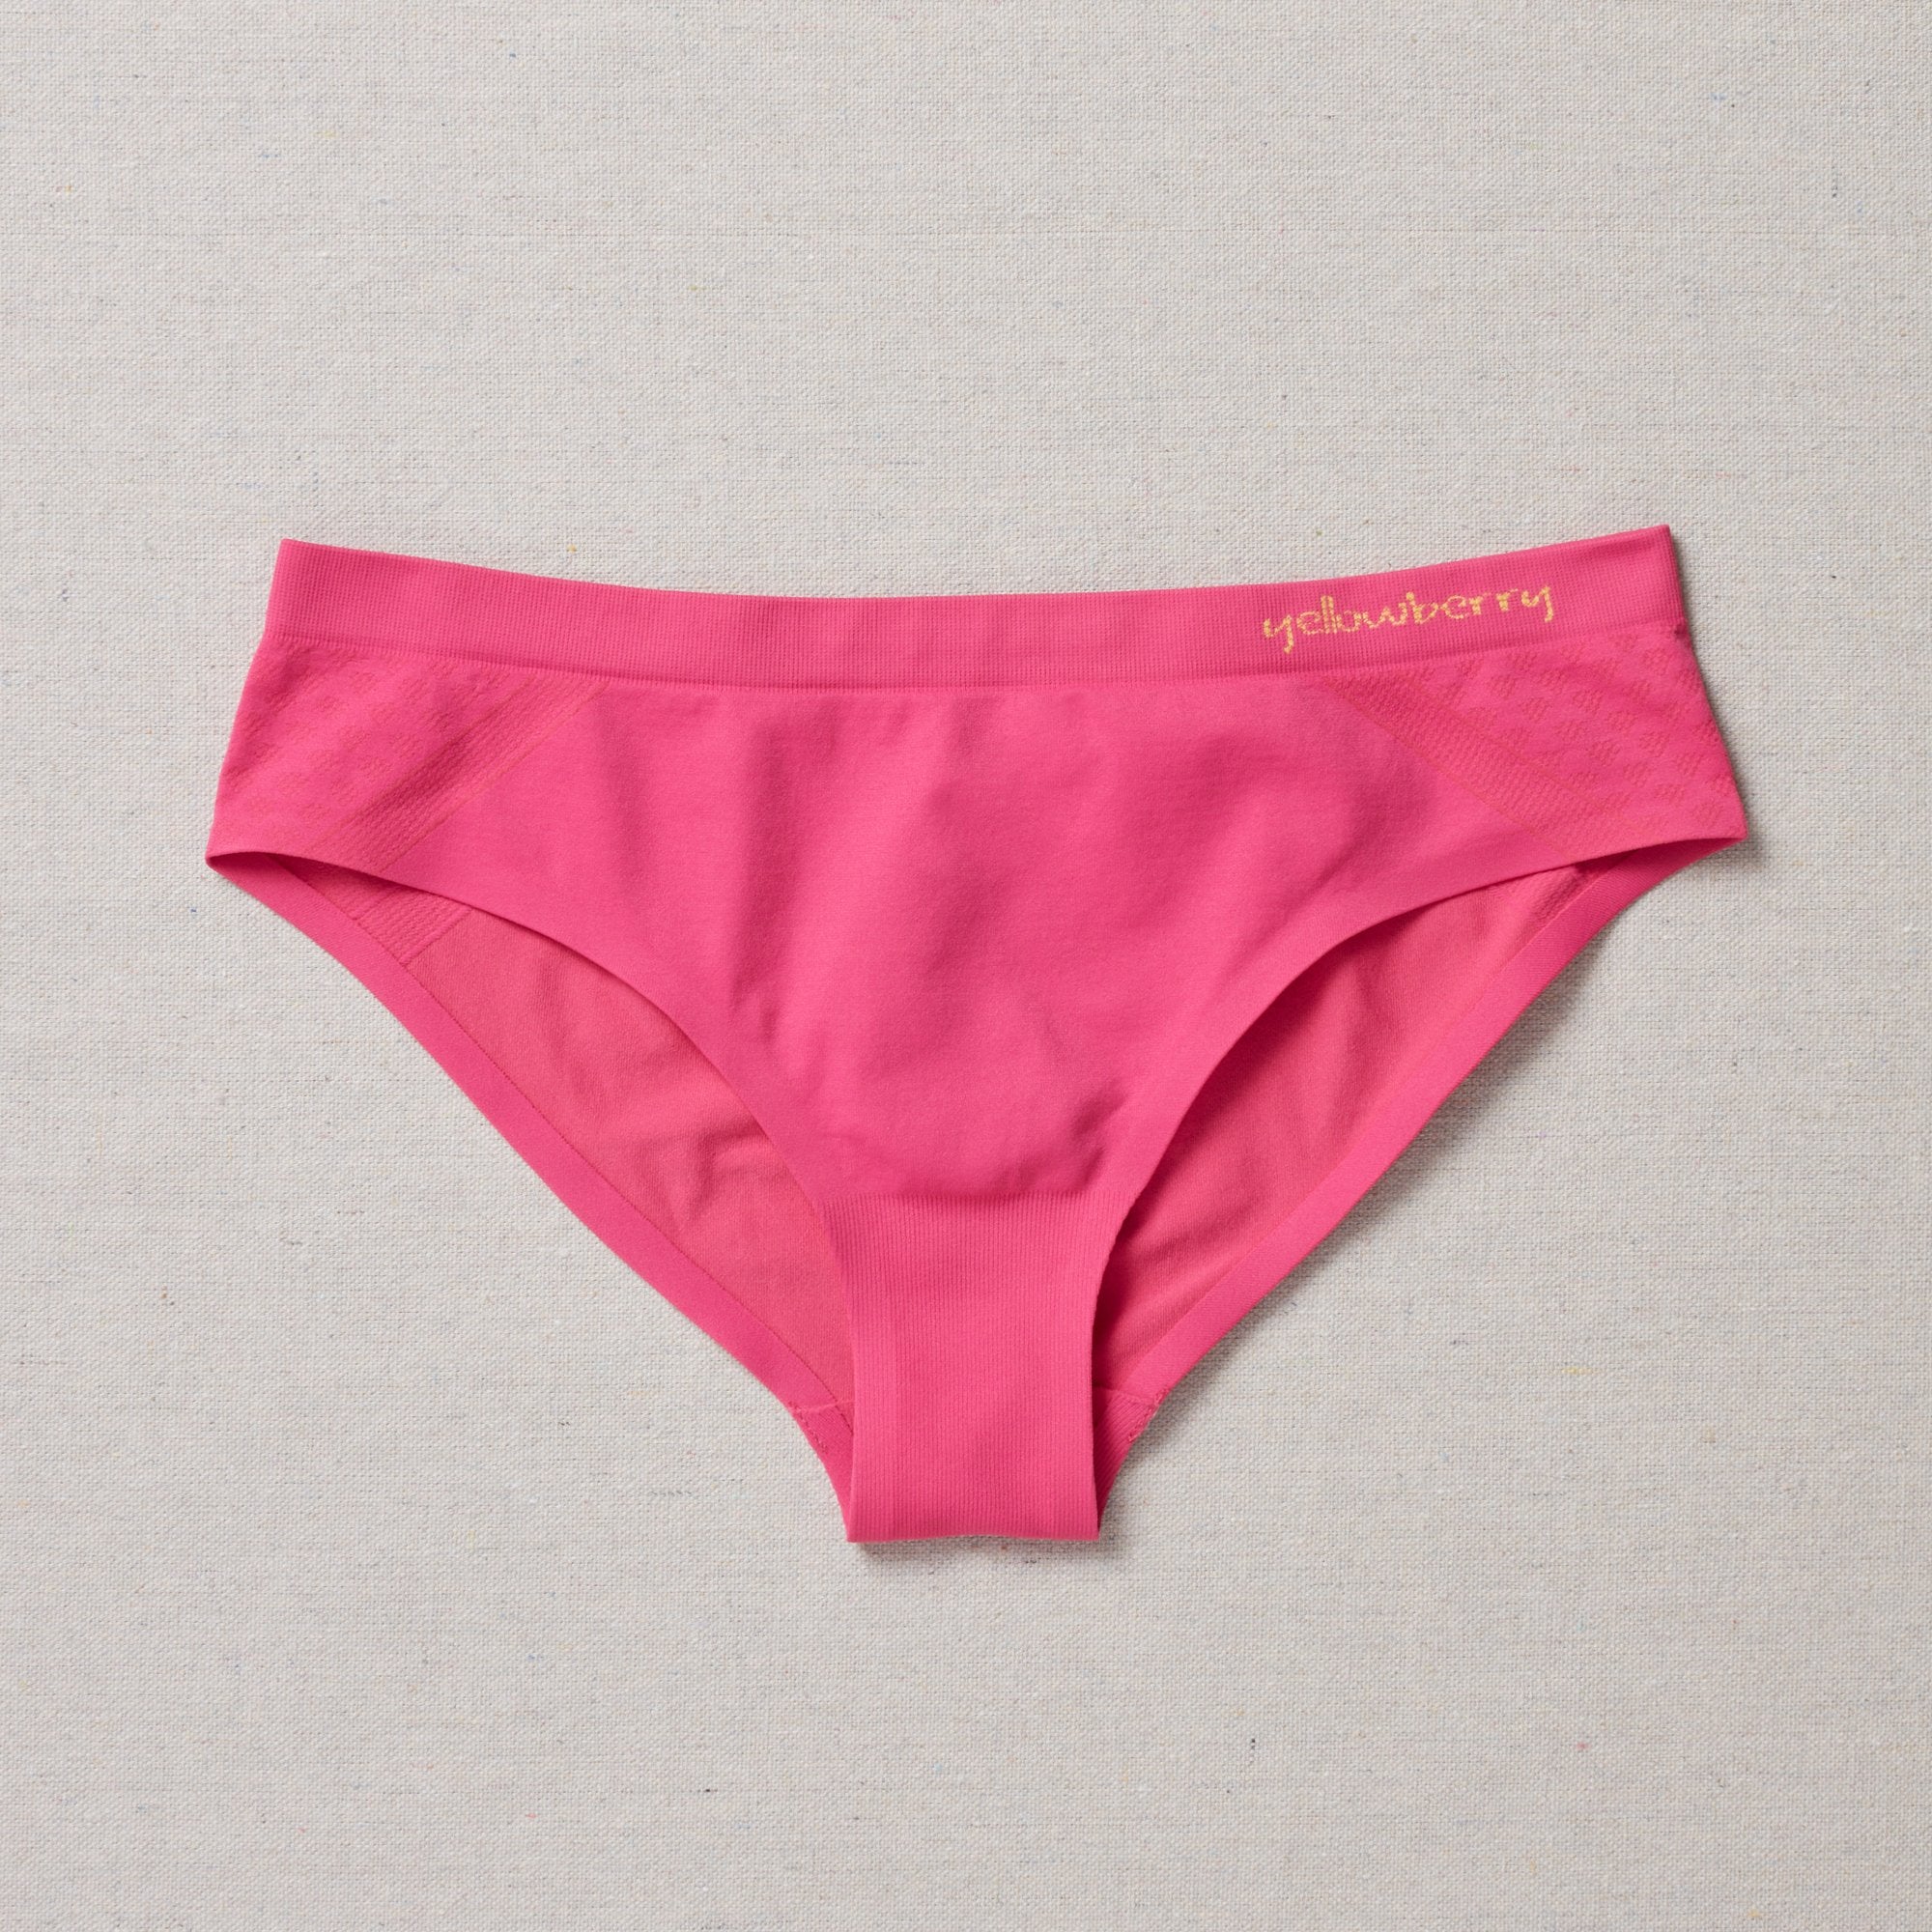 Pink Victoria’s Secret underwear